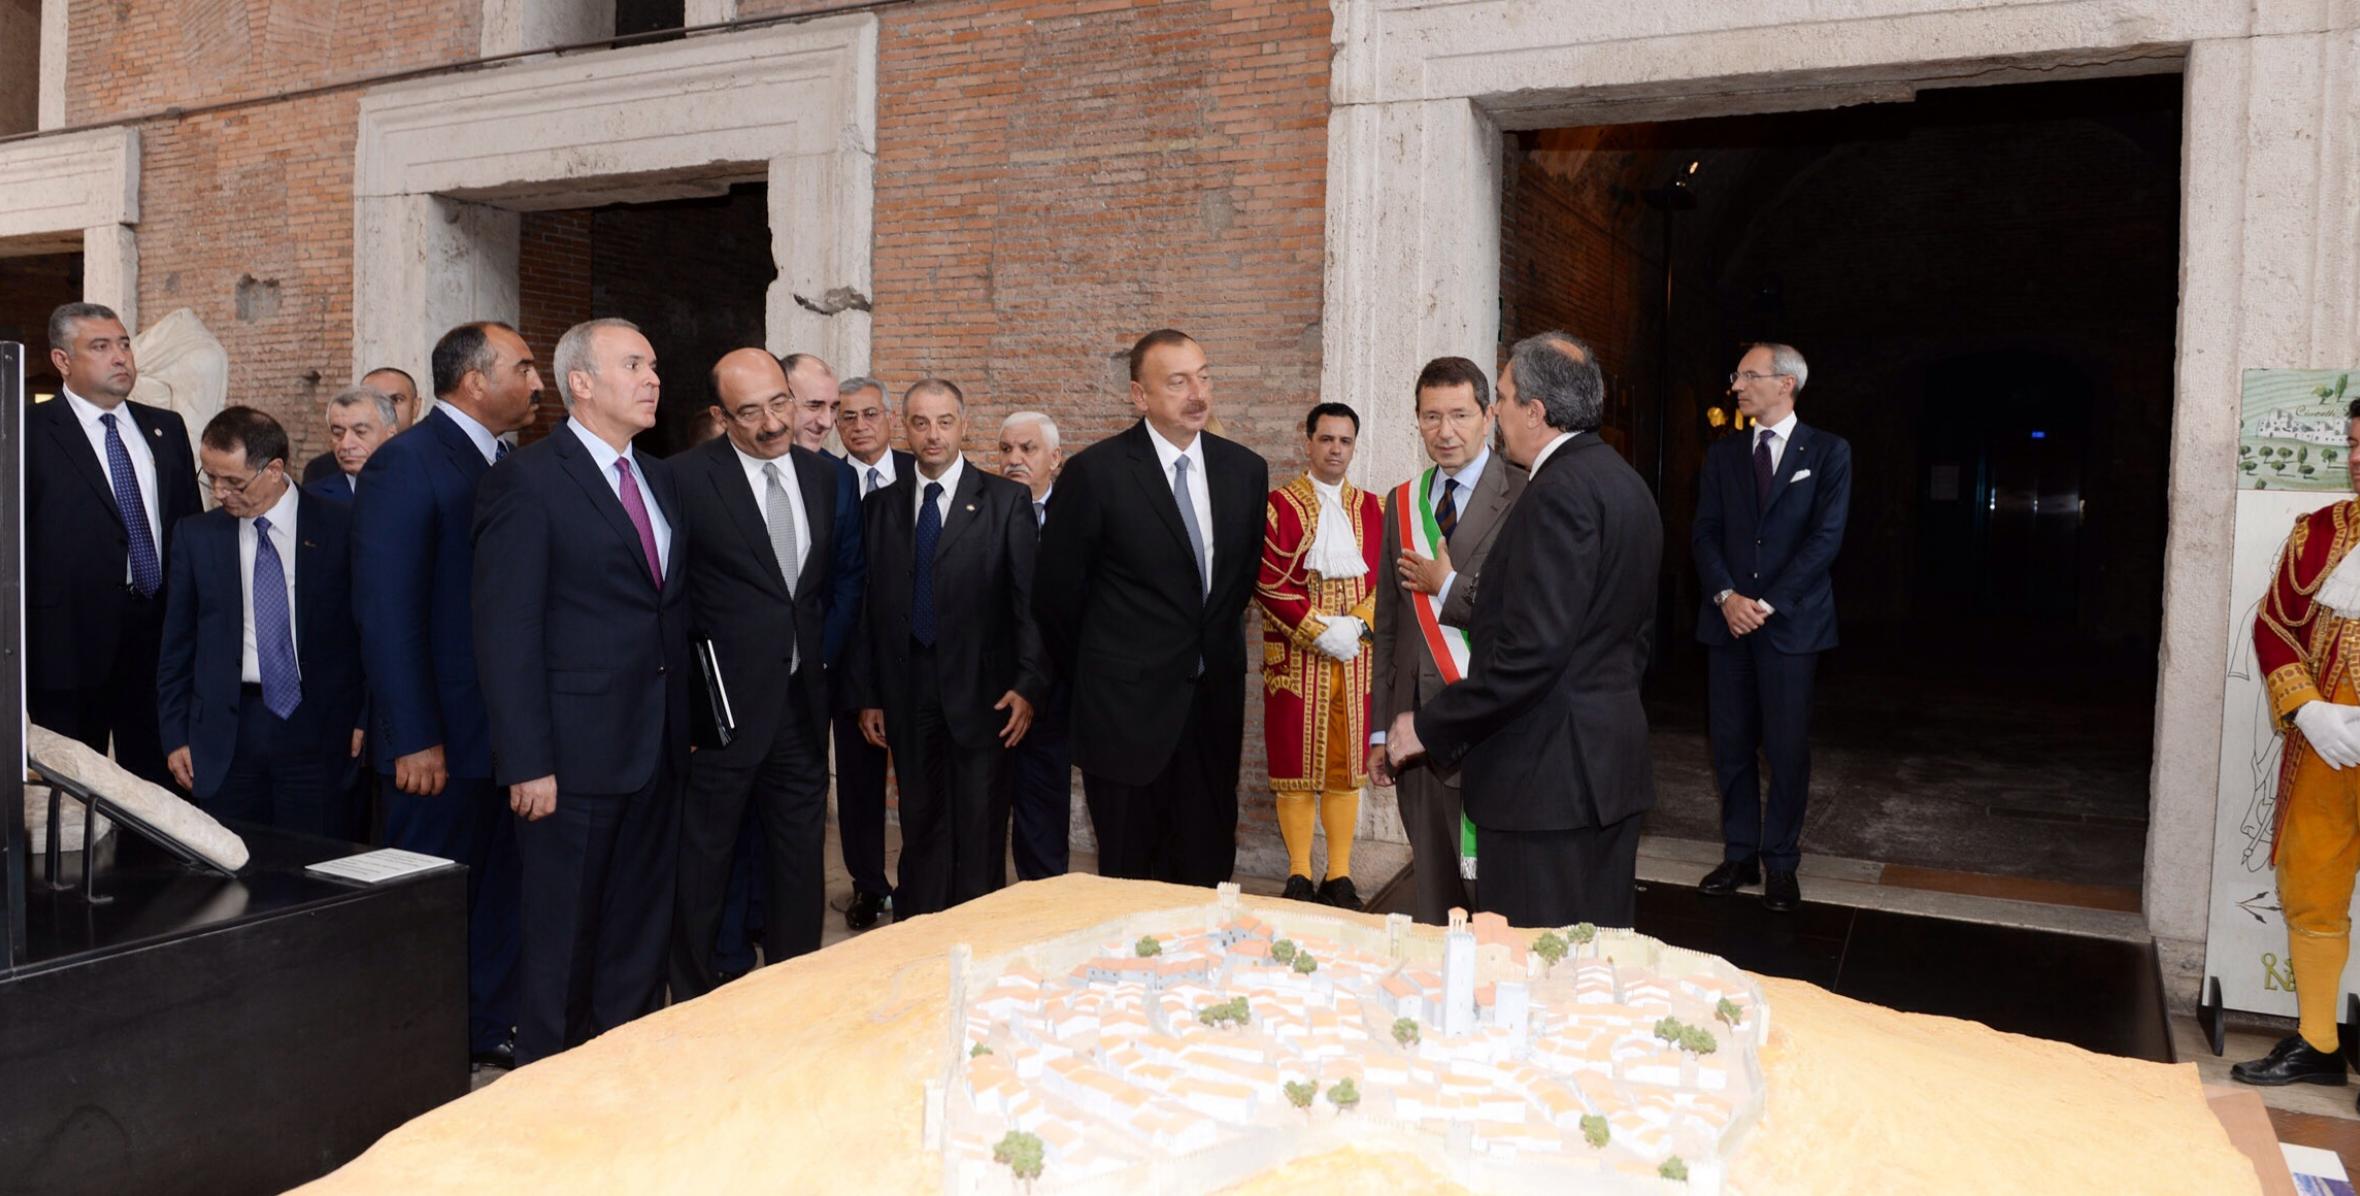 Ильхам Алиев посетил музей Mercati di Traiano в Риме, встретился там с мэром города Иньяцио Марино и дал интервью итальянским журналистам